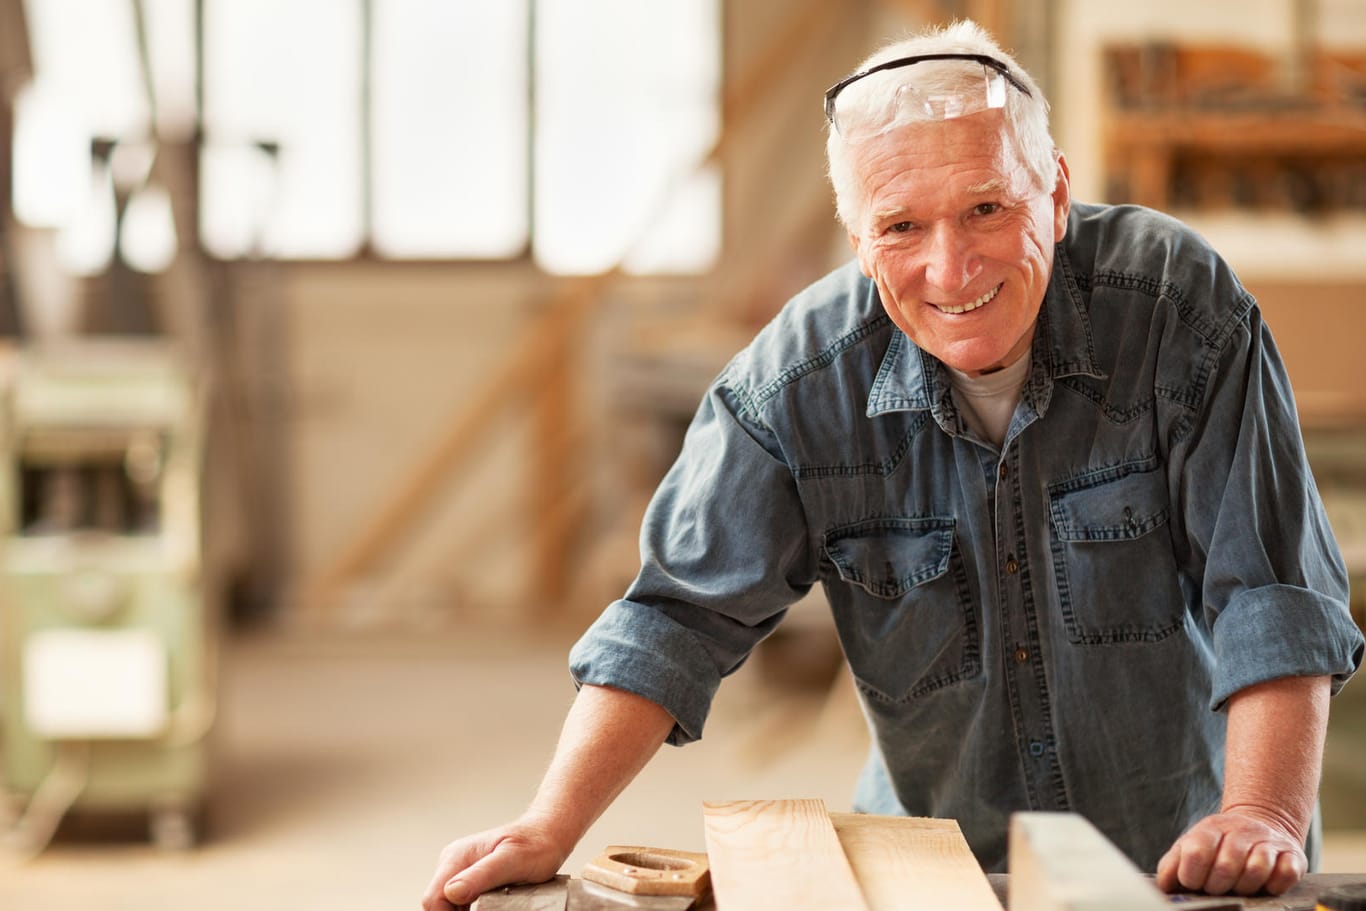 Tischler im Rentenalter: Viele Senioren haben Spaß bei der Arbeit. (Symbolbild)